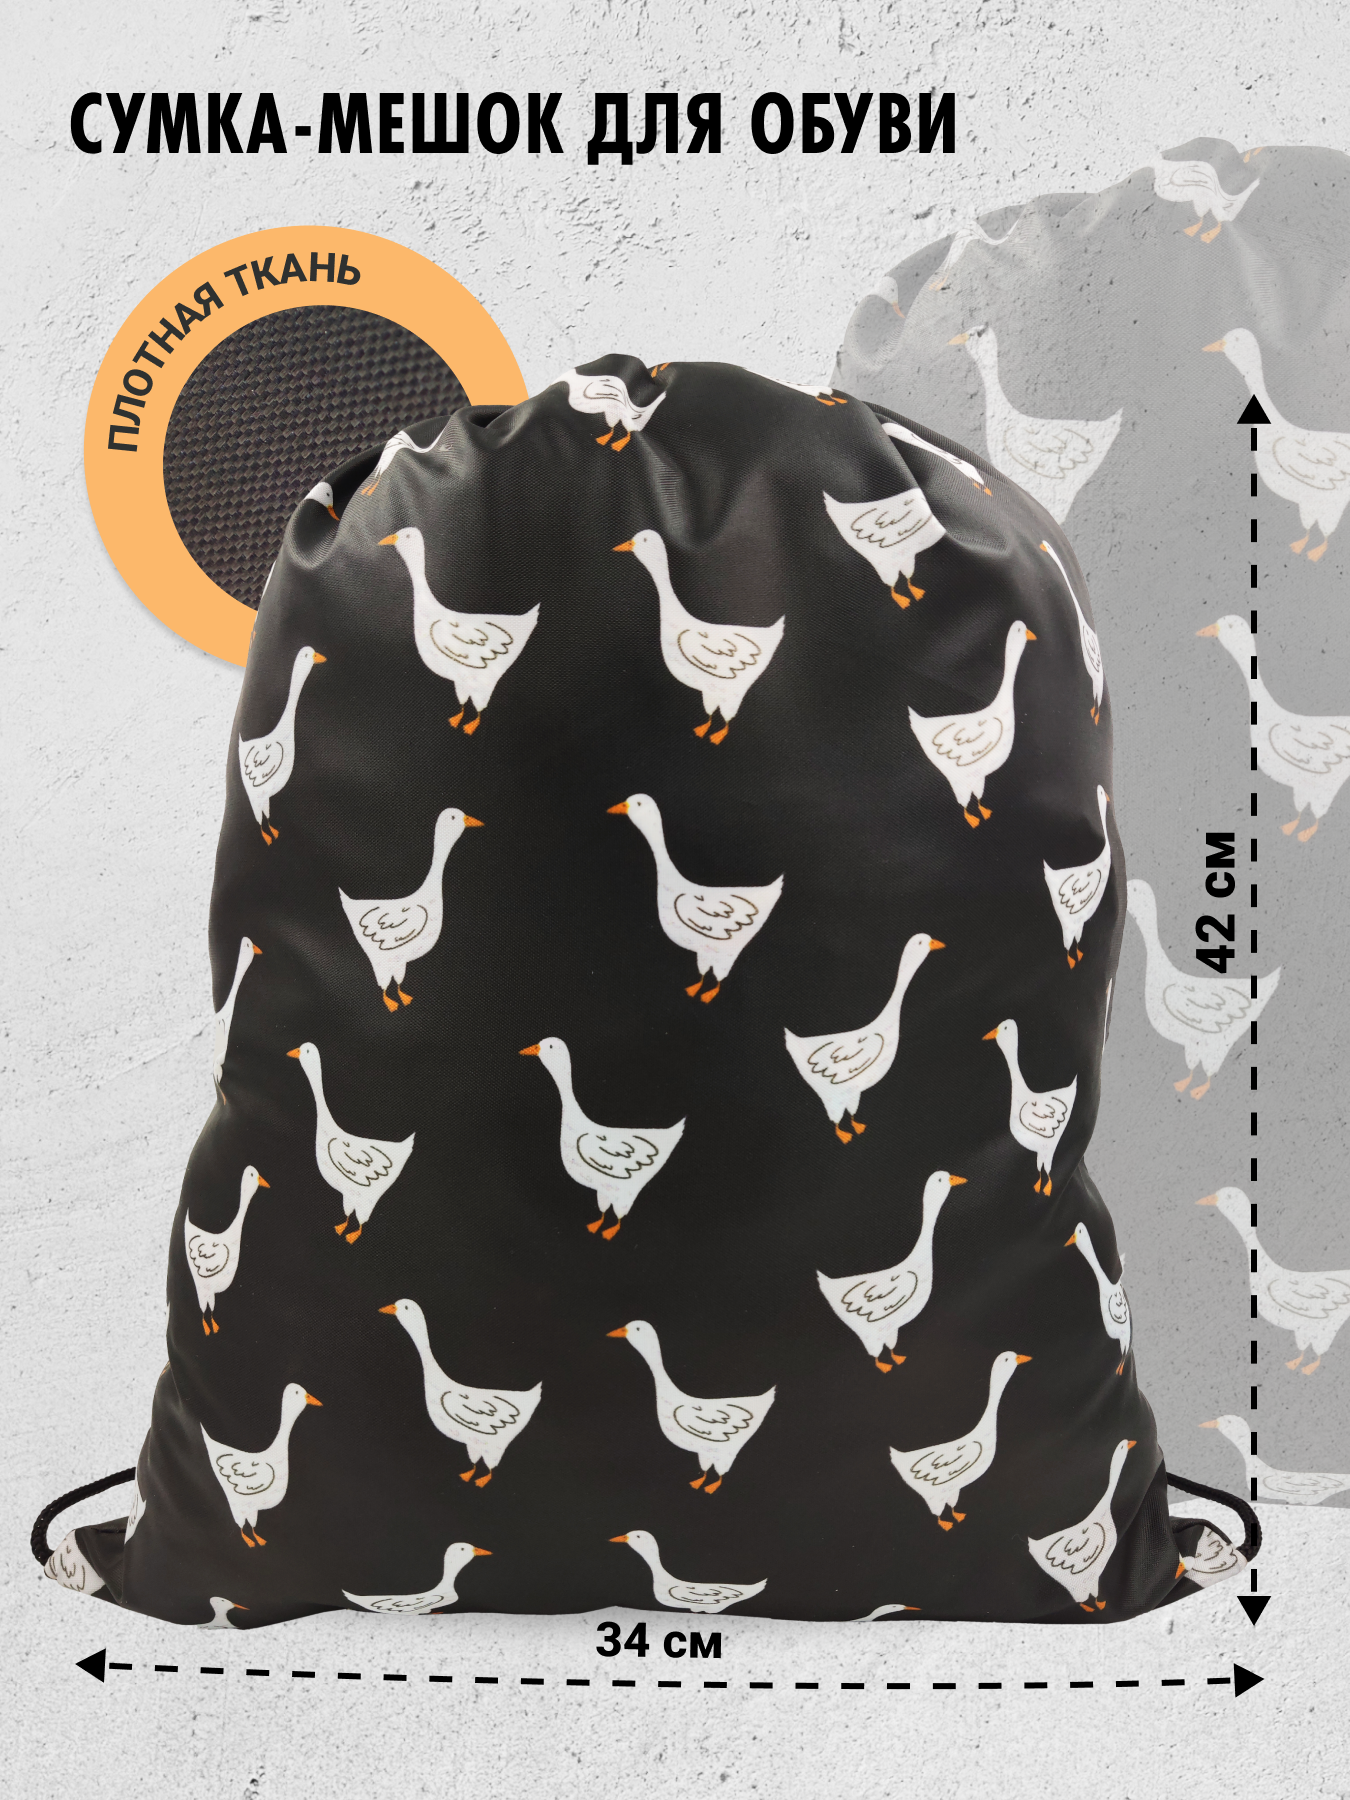 Мешок для сменной обуви AXLER спортивная сумка для сменки для мальчиков и девочек, черная, ткань оксфорд, 42х34 см